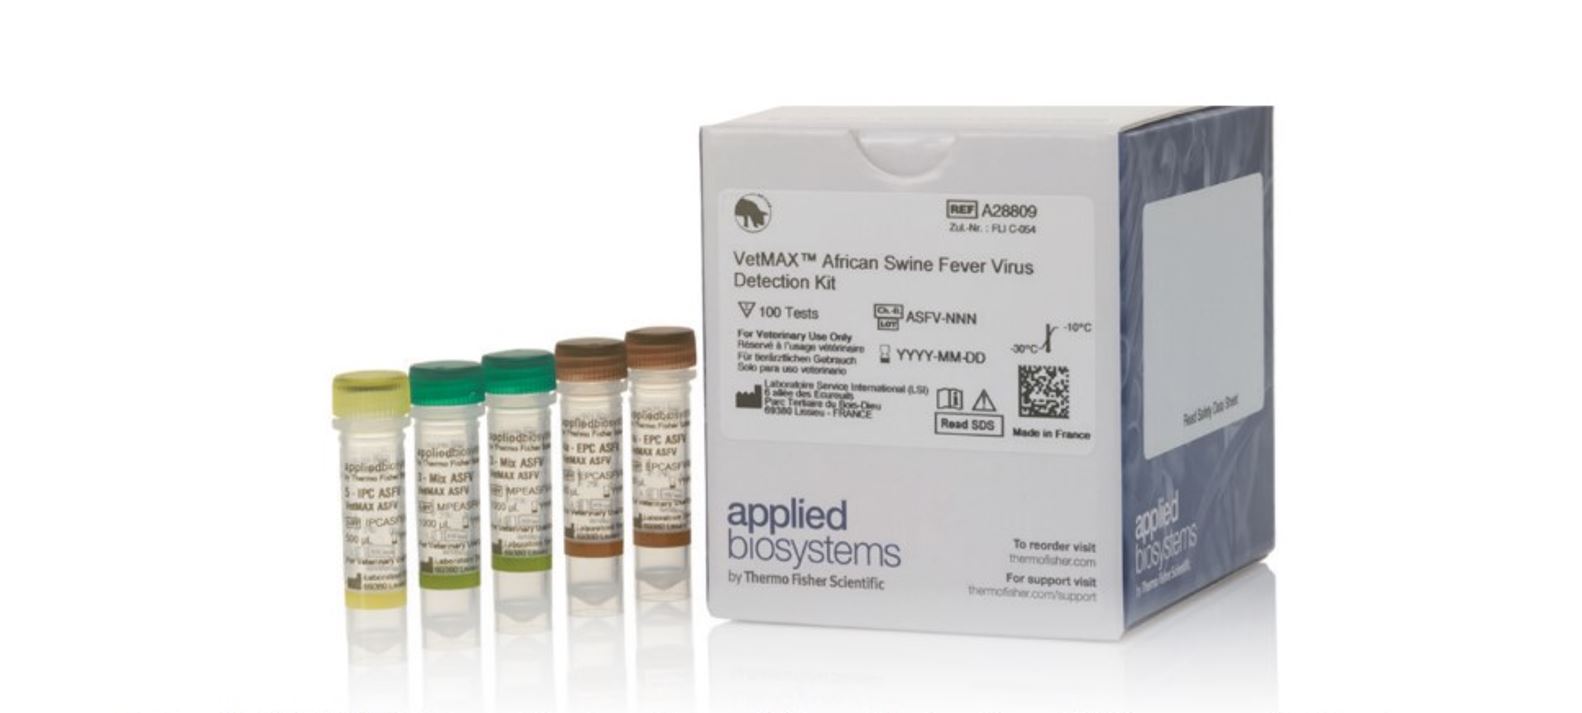 The VetMAX African Swine Fever Virus Detection Kit